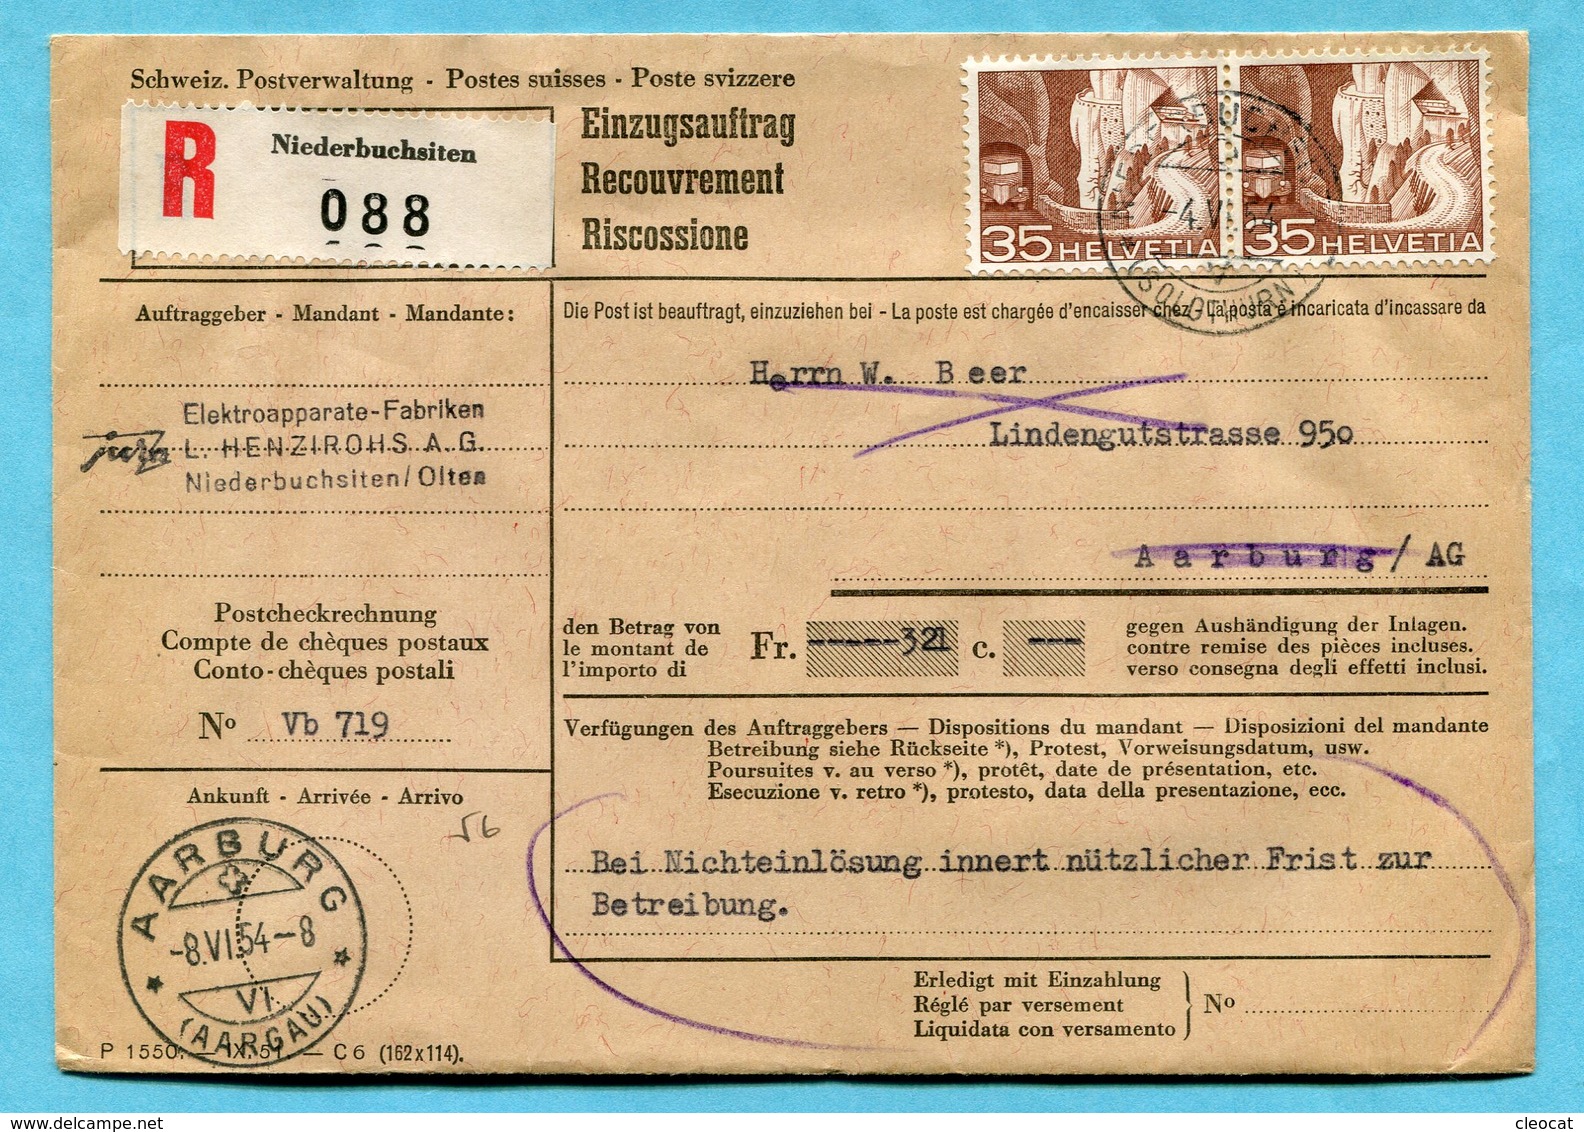 Einzugsauftrag Niederbuchsitten 1954 - Absender: Jura - L. Henzirohs A.G. - Storia Postale